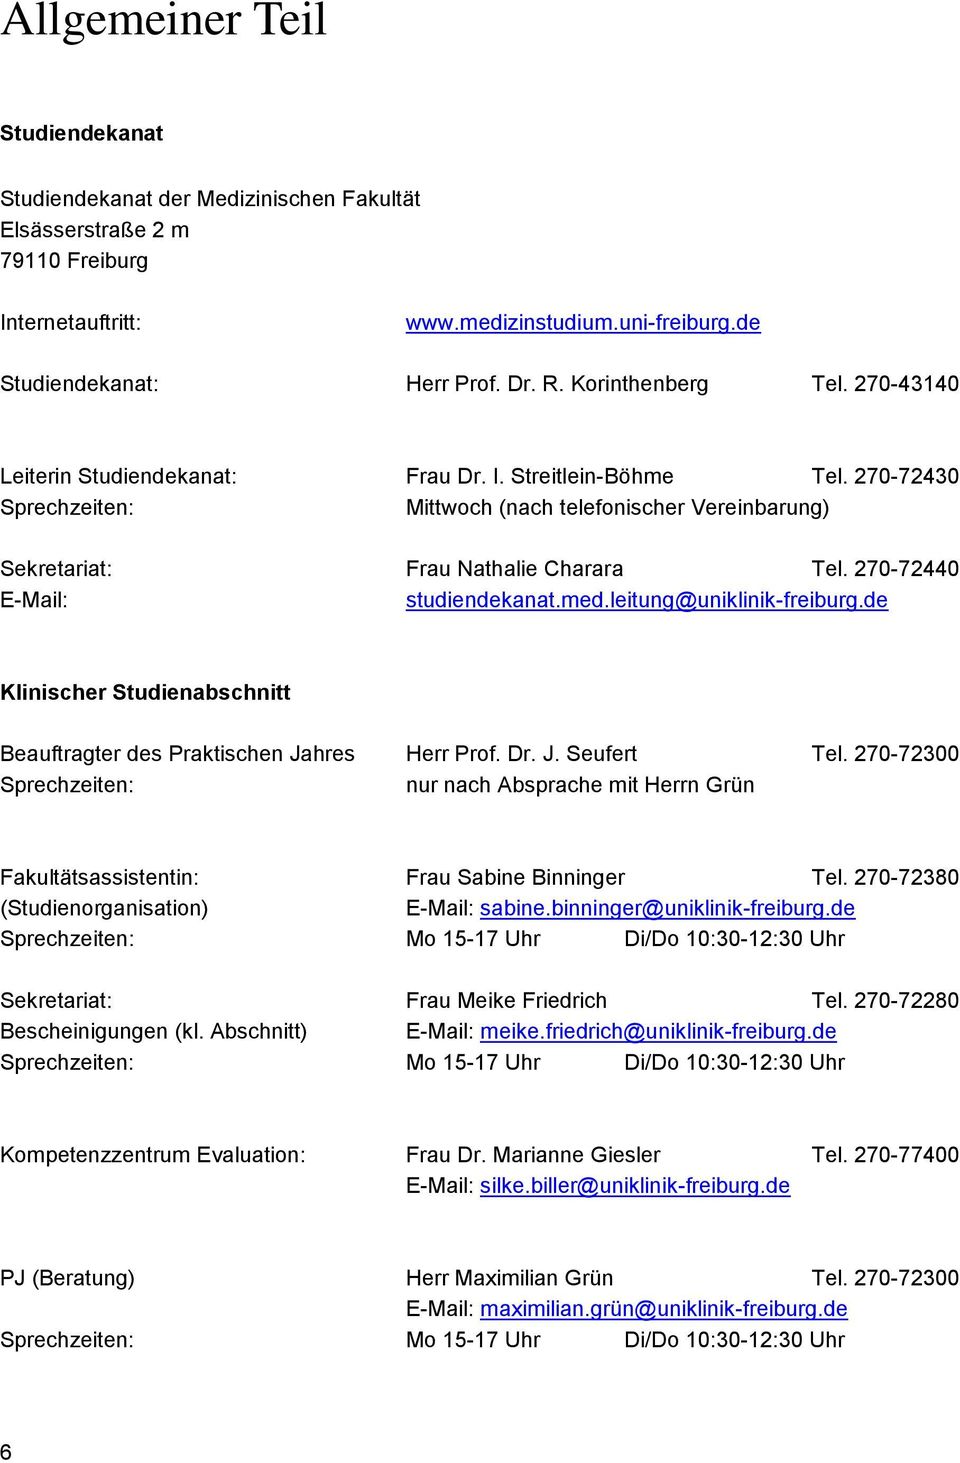 270-72440 E-Mail: studiendekanat.med.leitung@uniklinik-freiburg.de Klinischer Studienabschnitt Beauftragter des Praktischen Jahres Herr Prof. Dr. J. Seufert Tel.